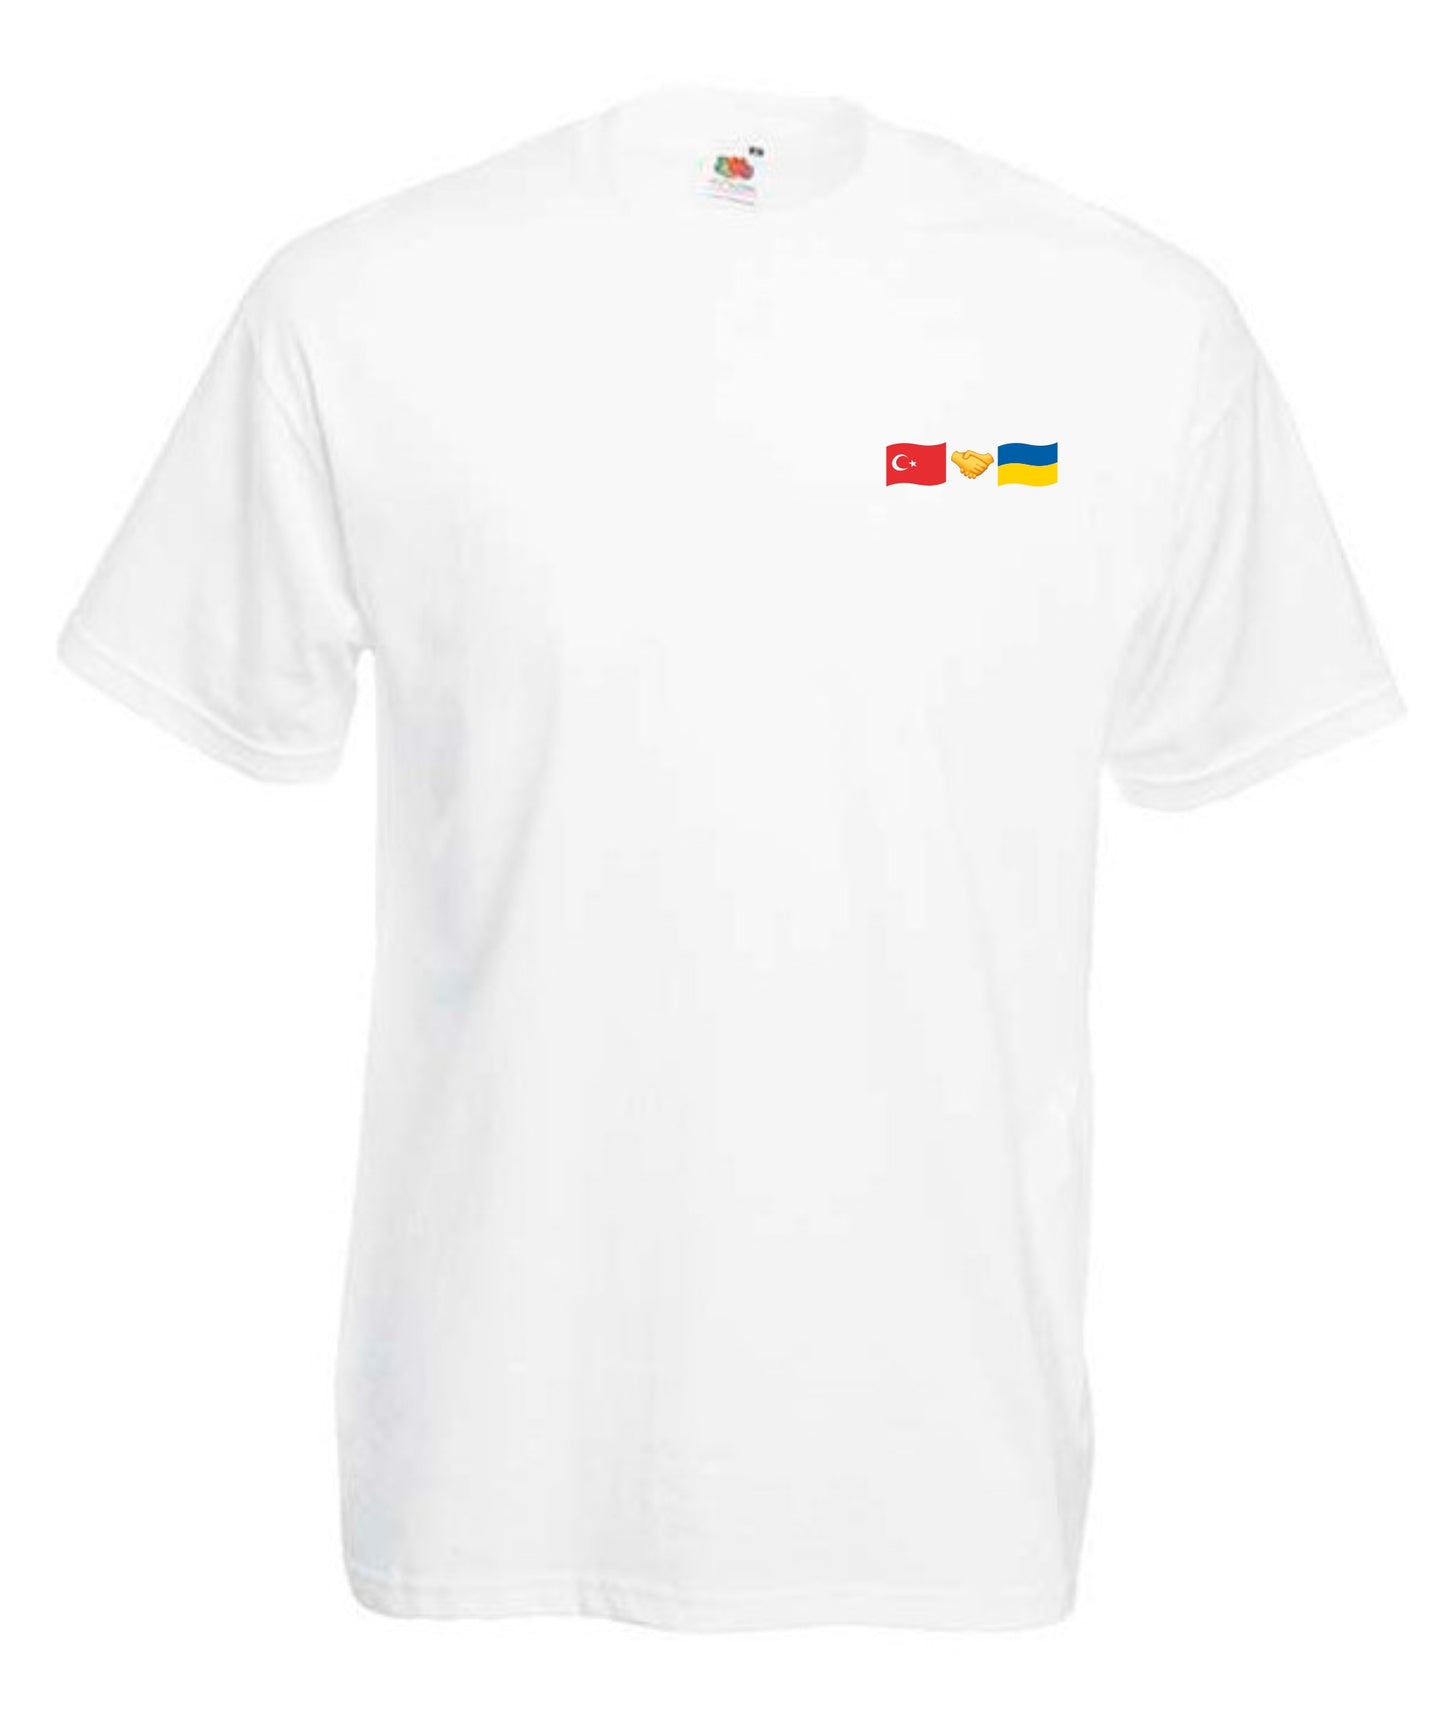 Т-shirt Turkey + Ukraine (small logo)